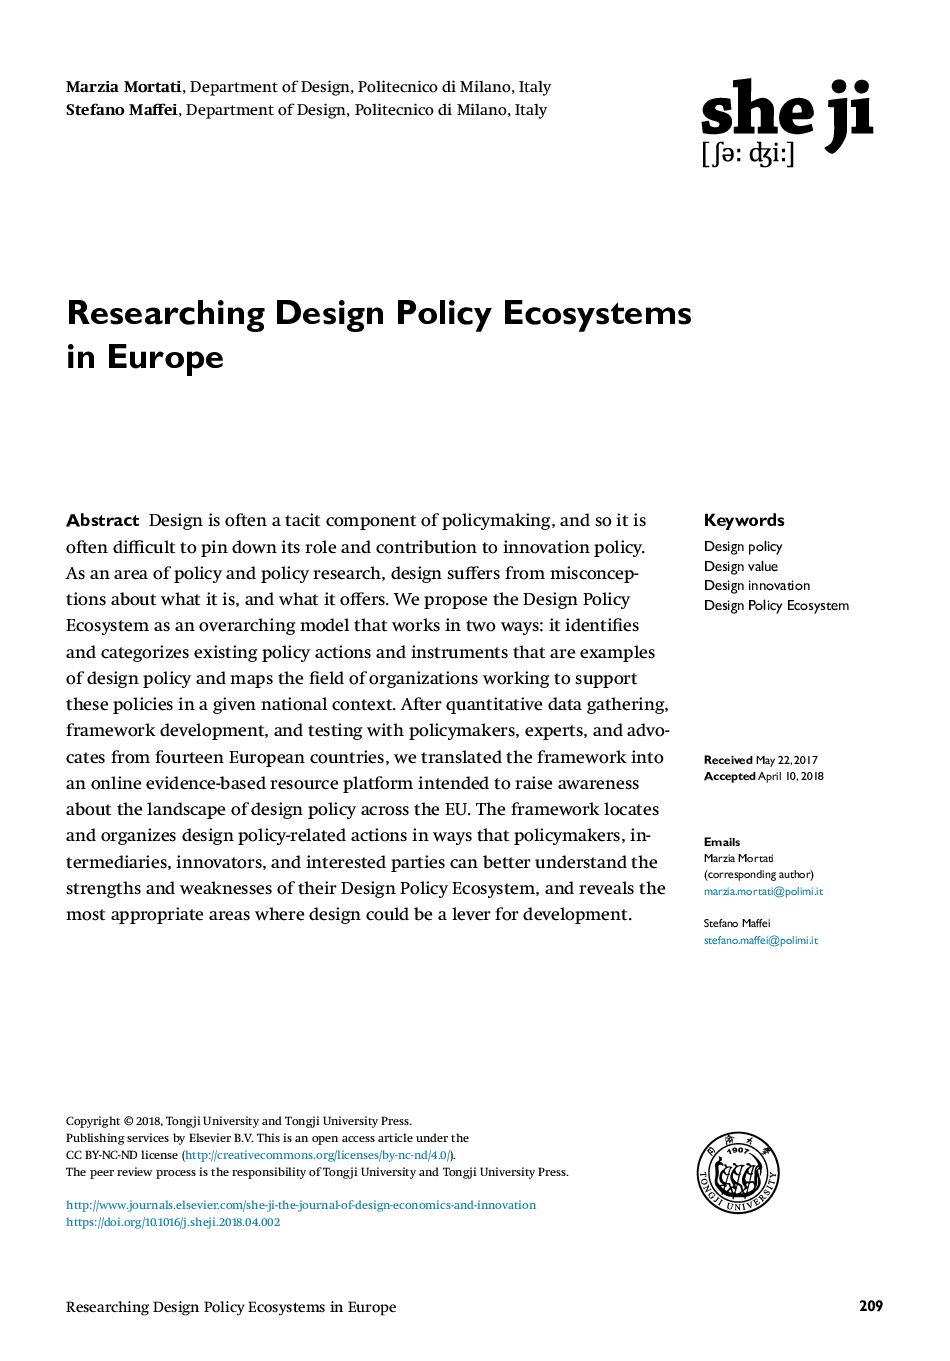 بررسی اکوسیستم های سیاست طراحی در اروپا